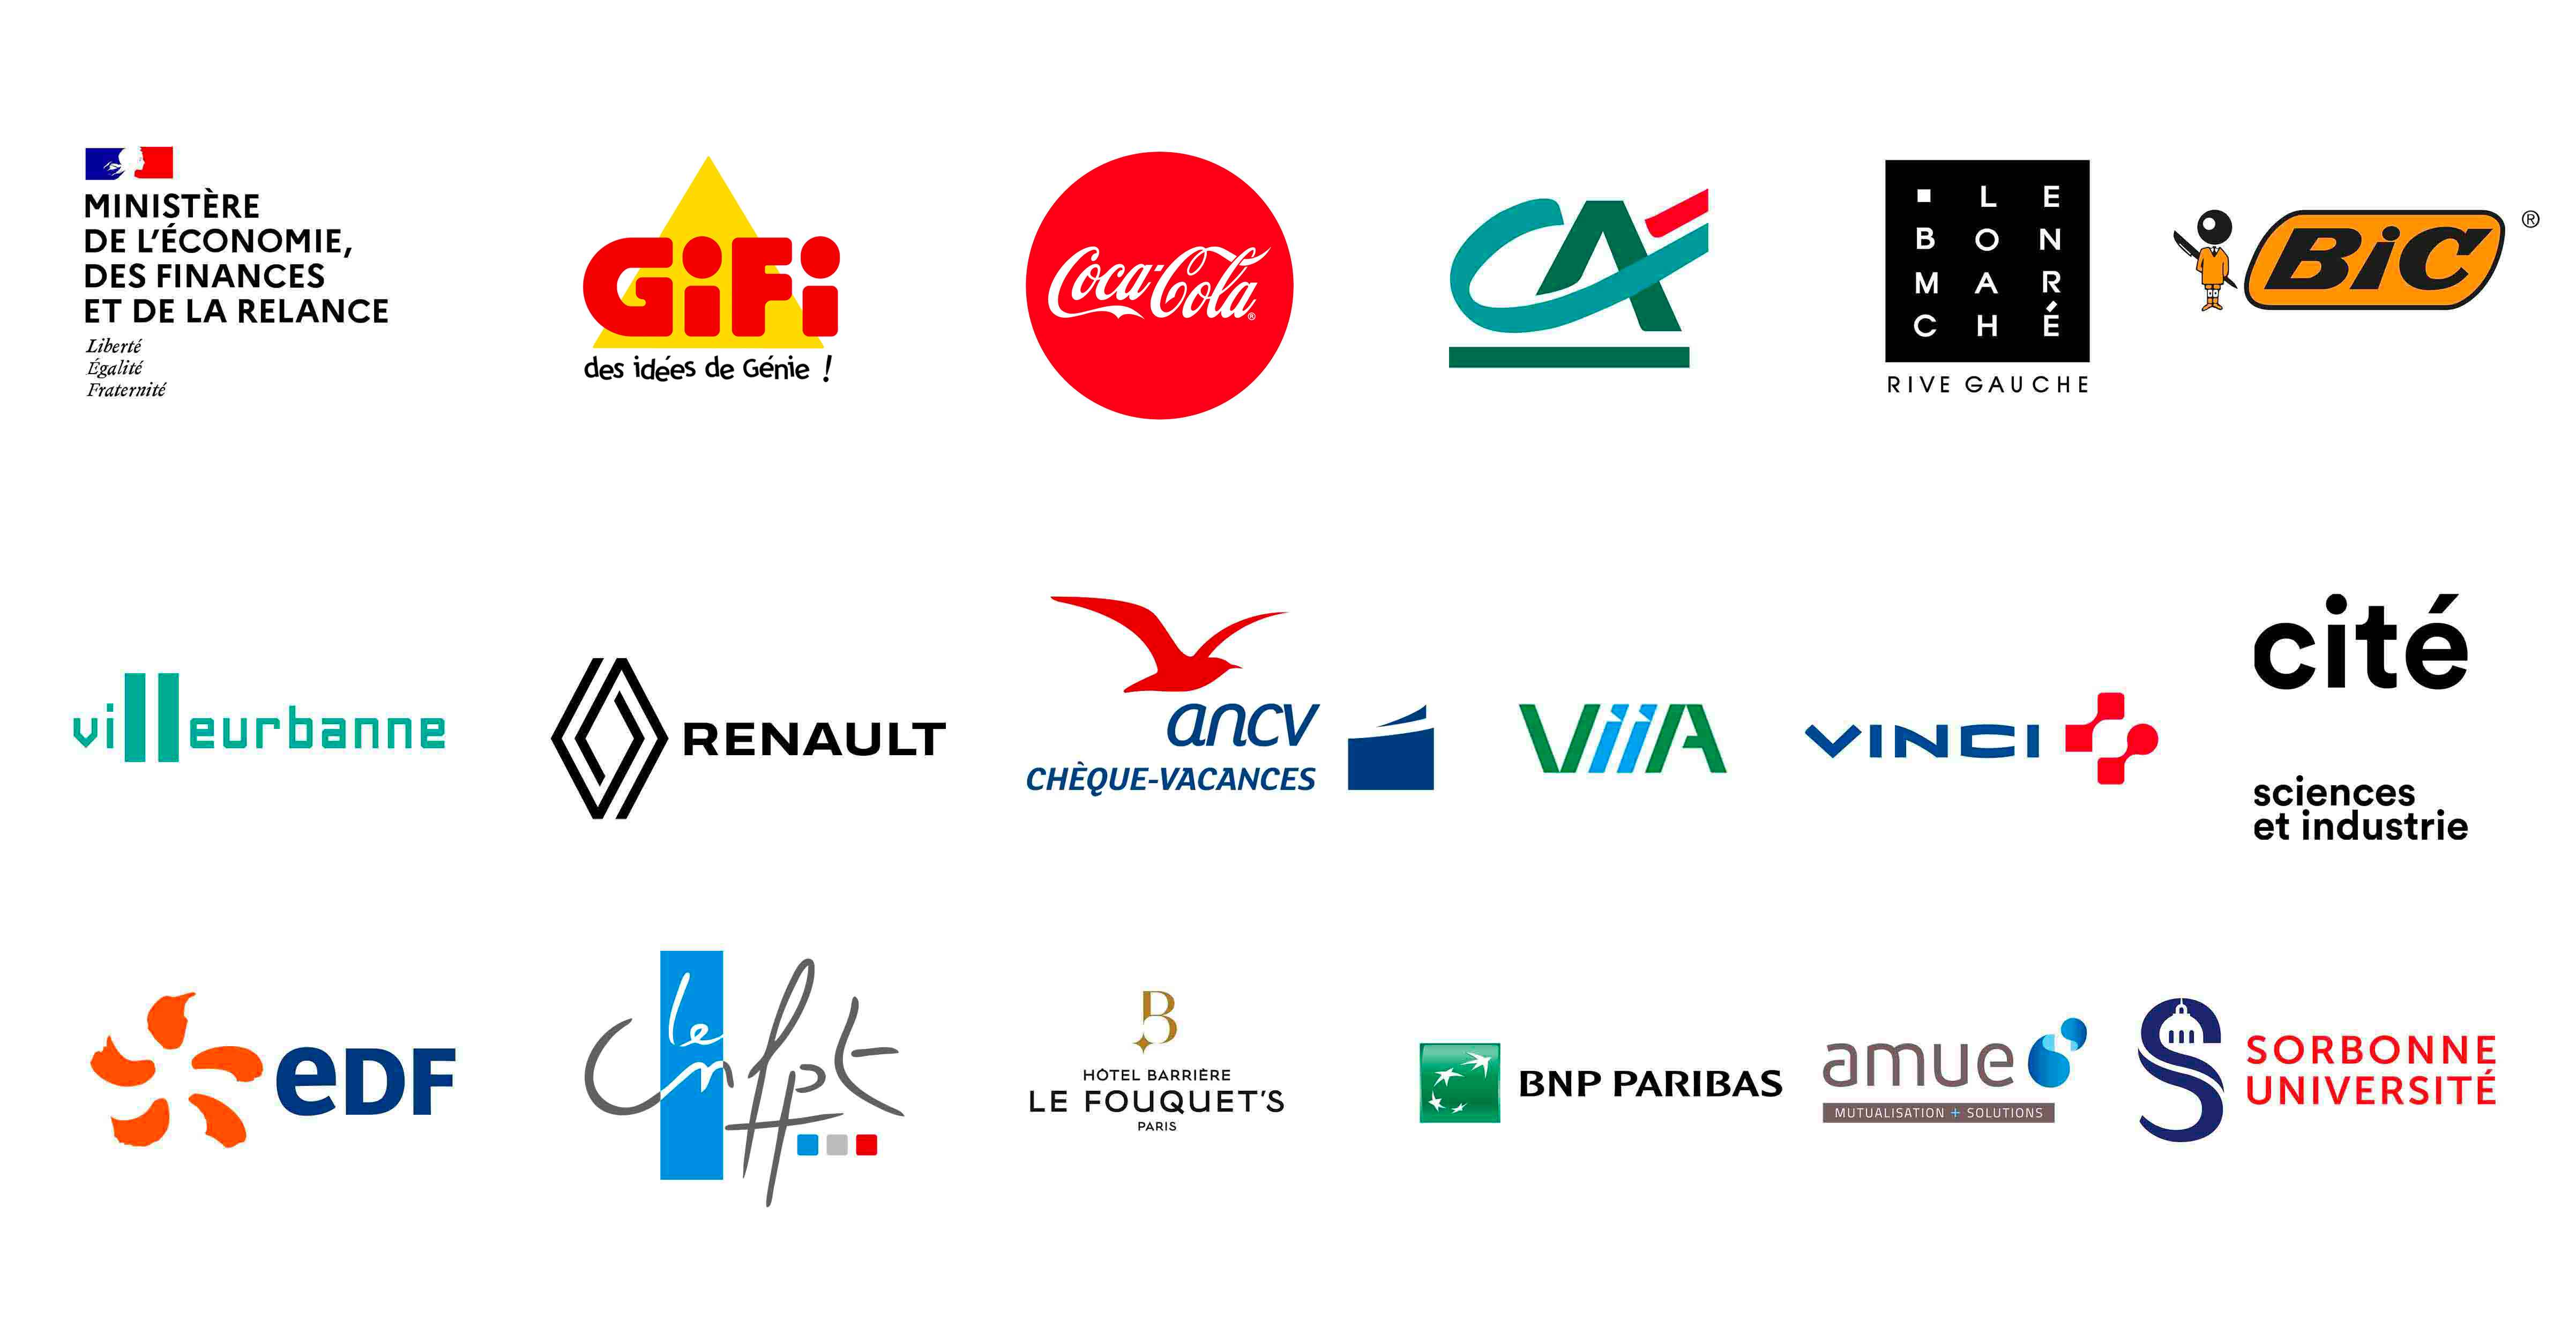 Il y a des logos d entreprises qui ont participé à code climat comme les ministère des finance, bic, edf, la sorbonne université